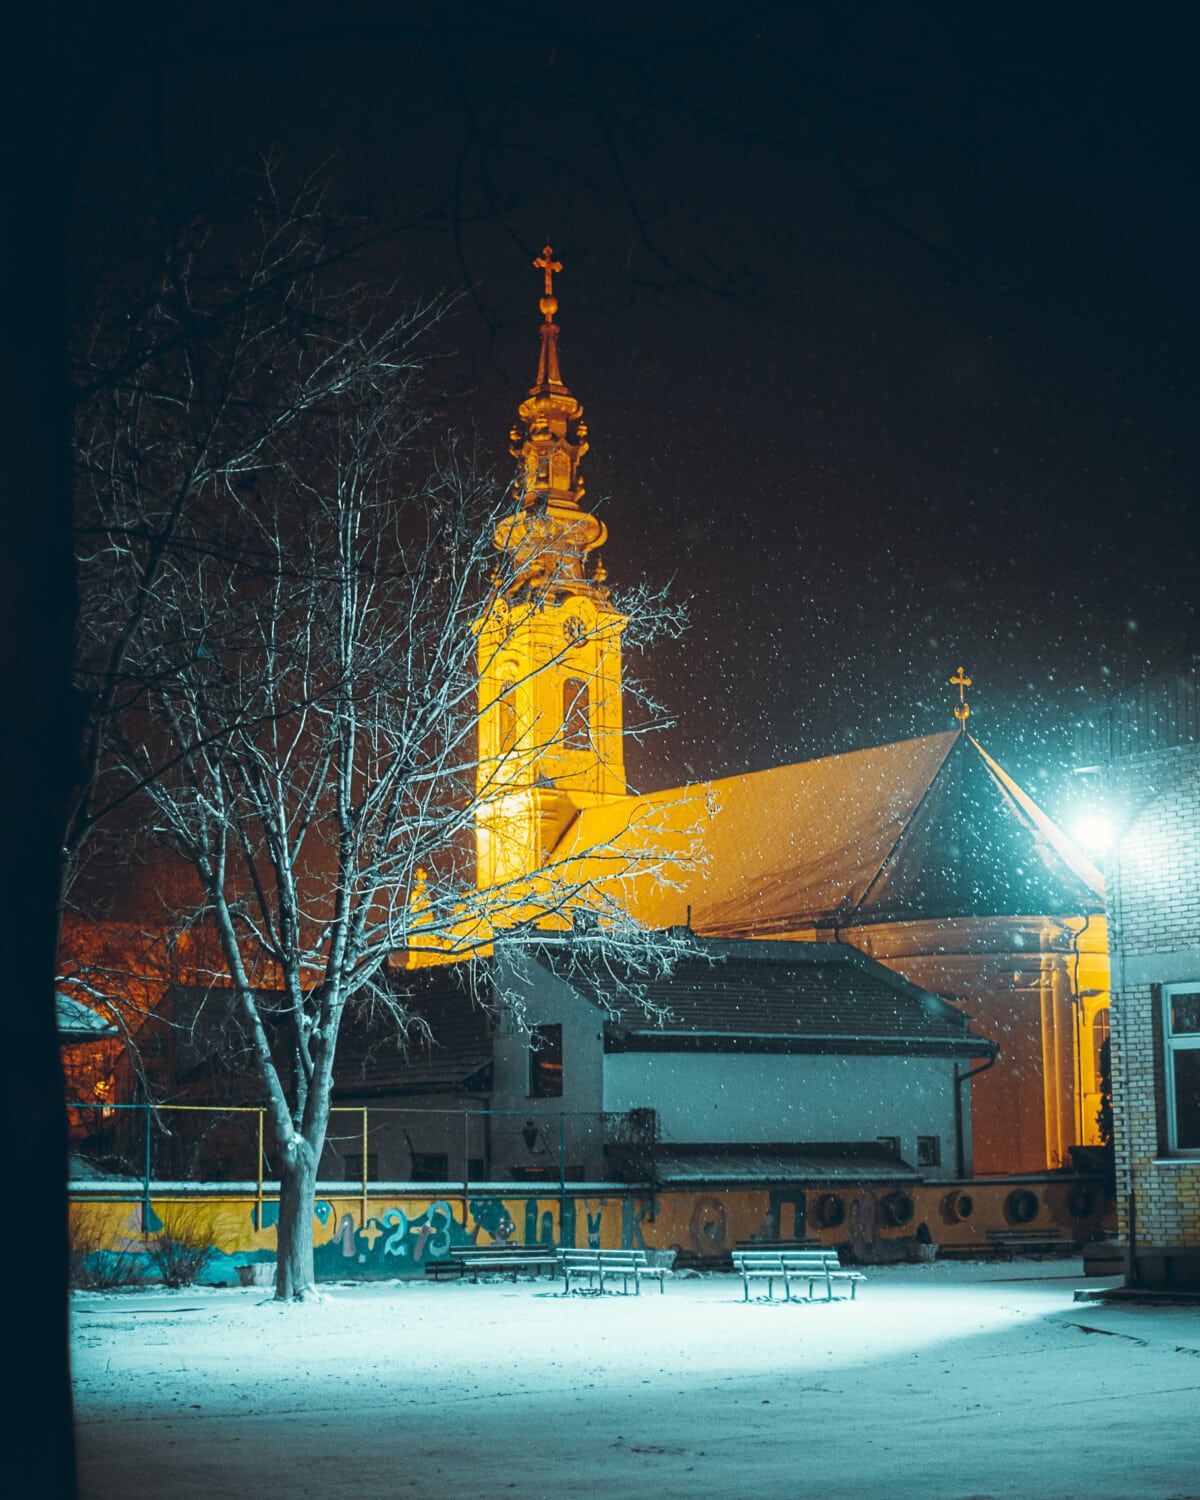 νιφάδες χιονιού, διανυκτέρευση, χιονισμένο, εκκλησία, πύργος εκκλησιών, κτίρια, Οδός, χιόνι, Χειμώνας, πόλη